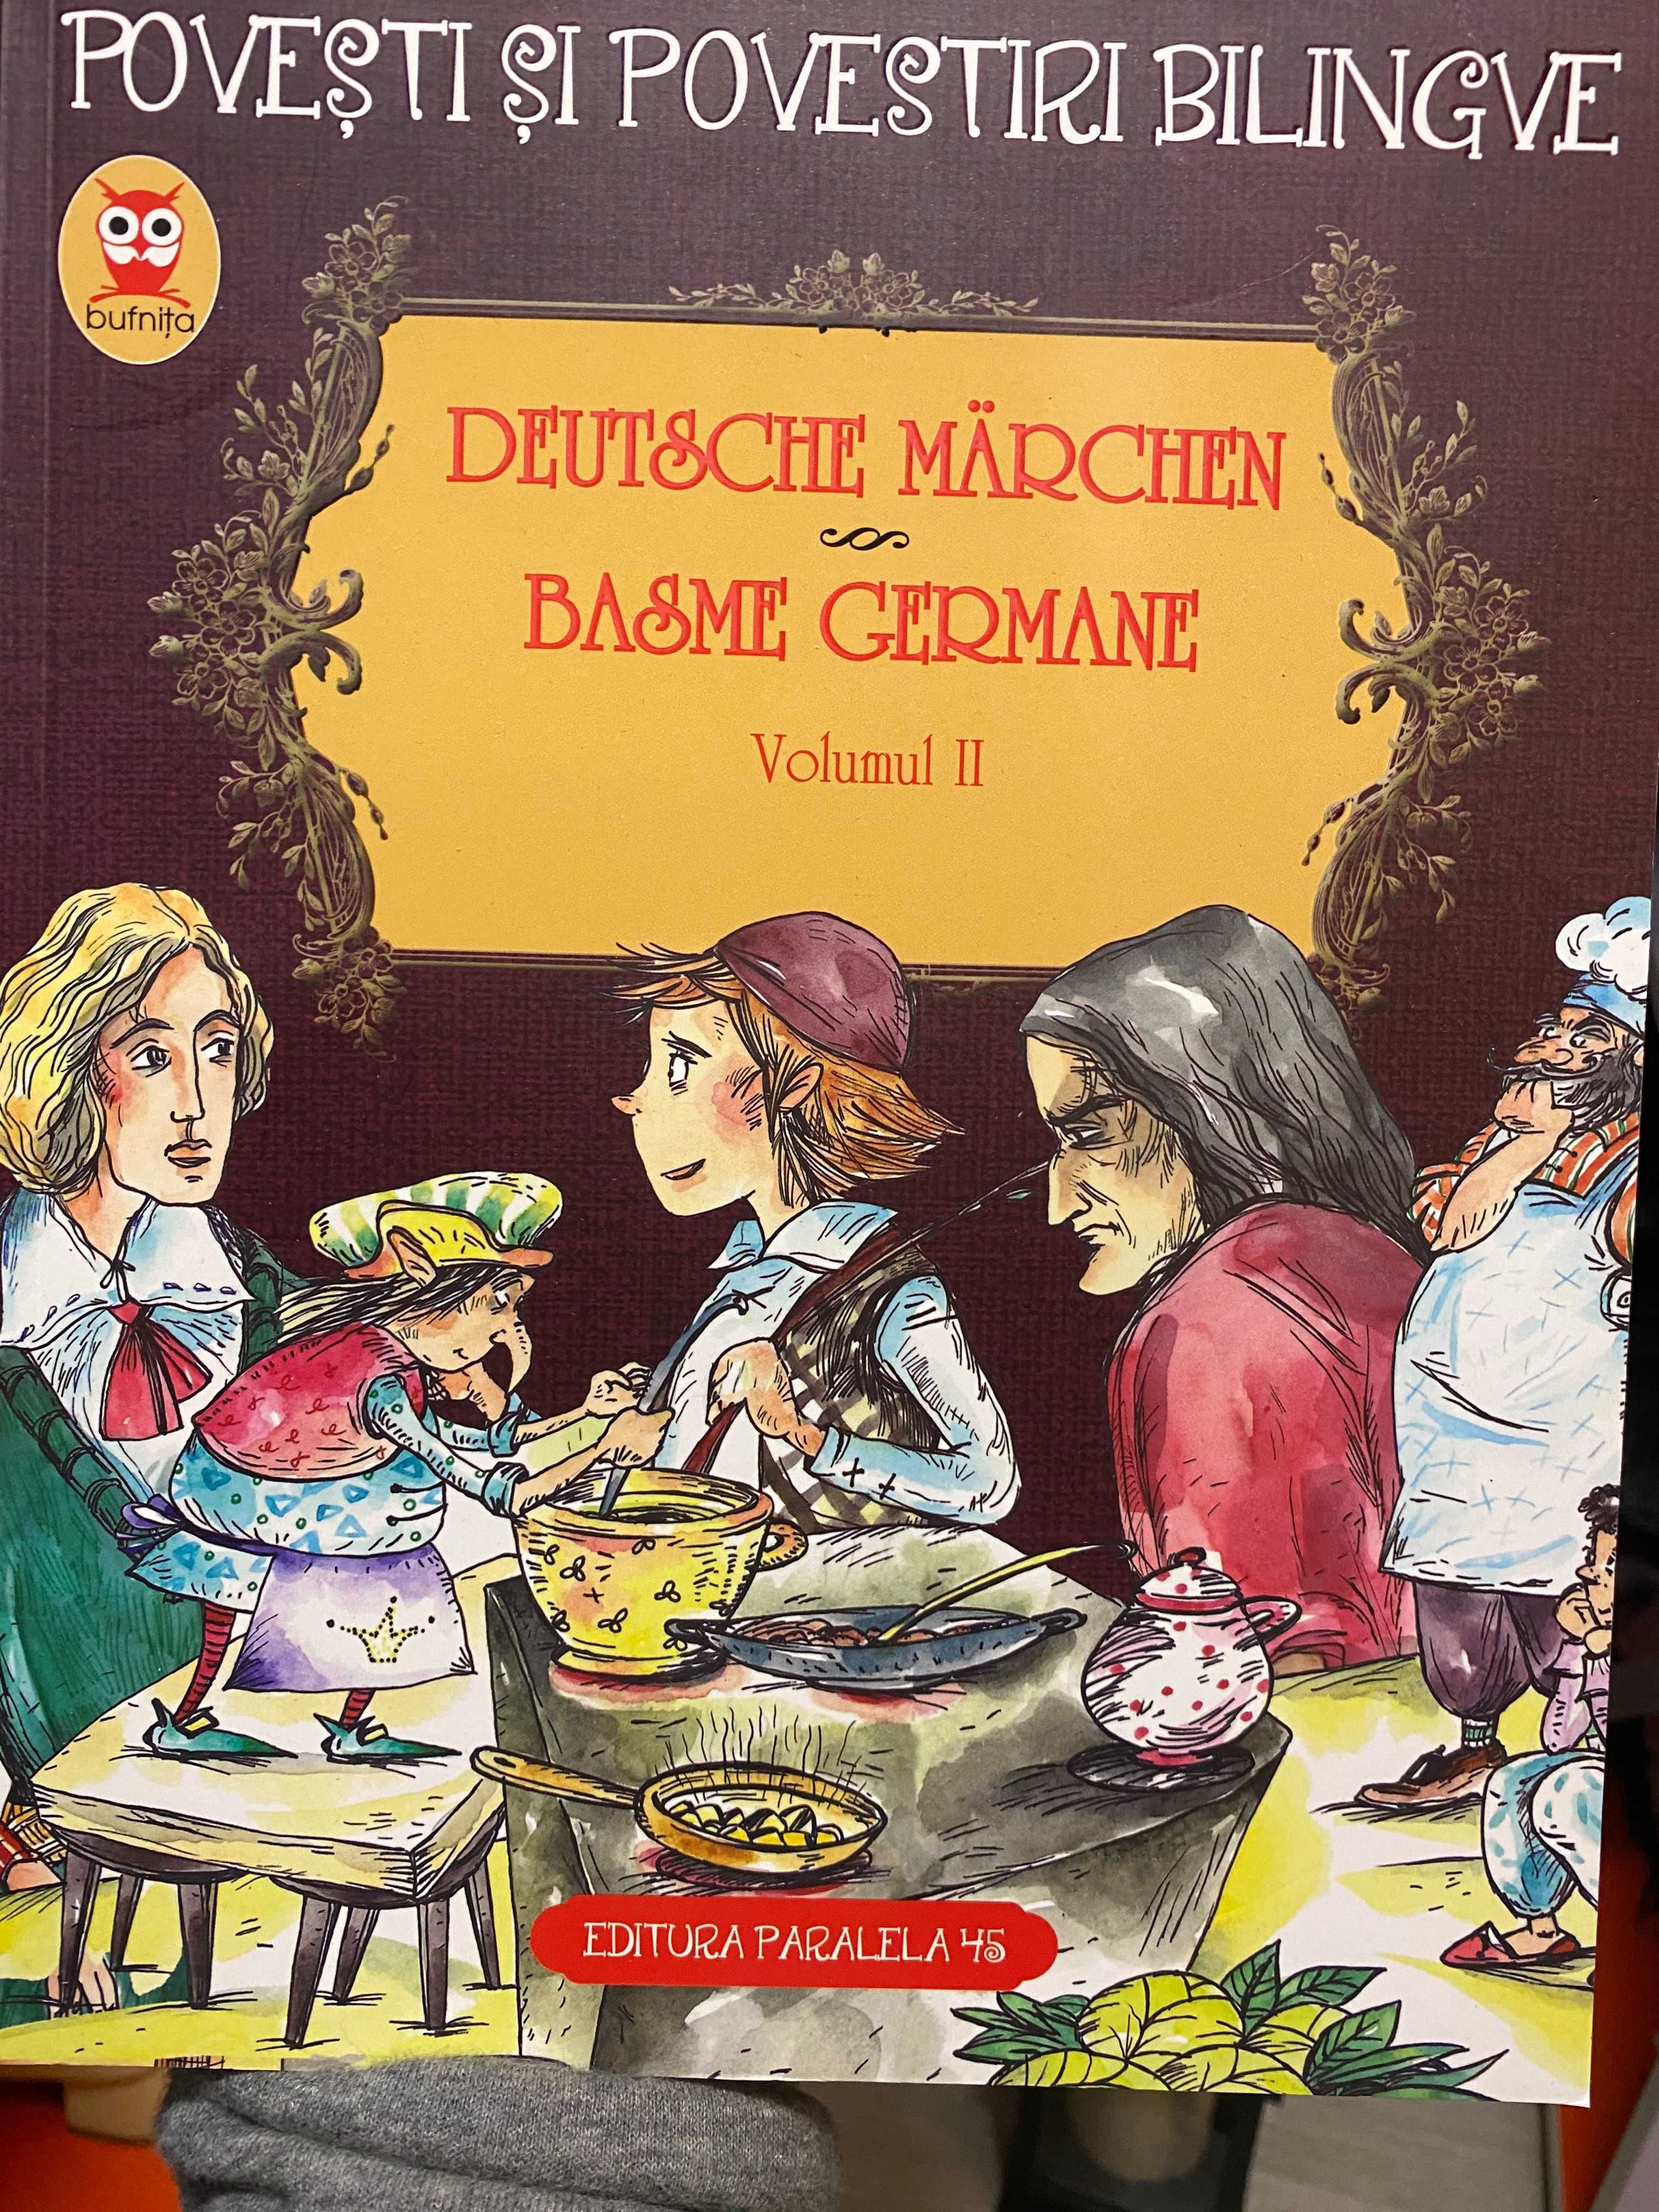 Basme Germane/Deutsche Marchen BILINGVE -3 volume